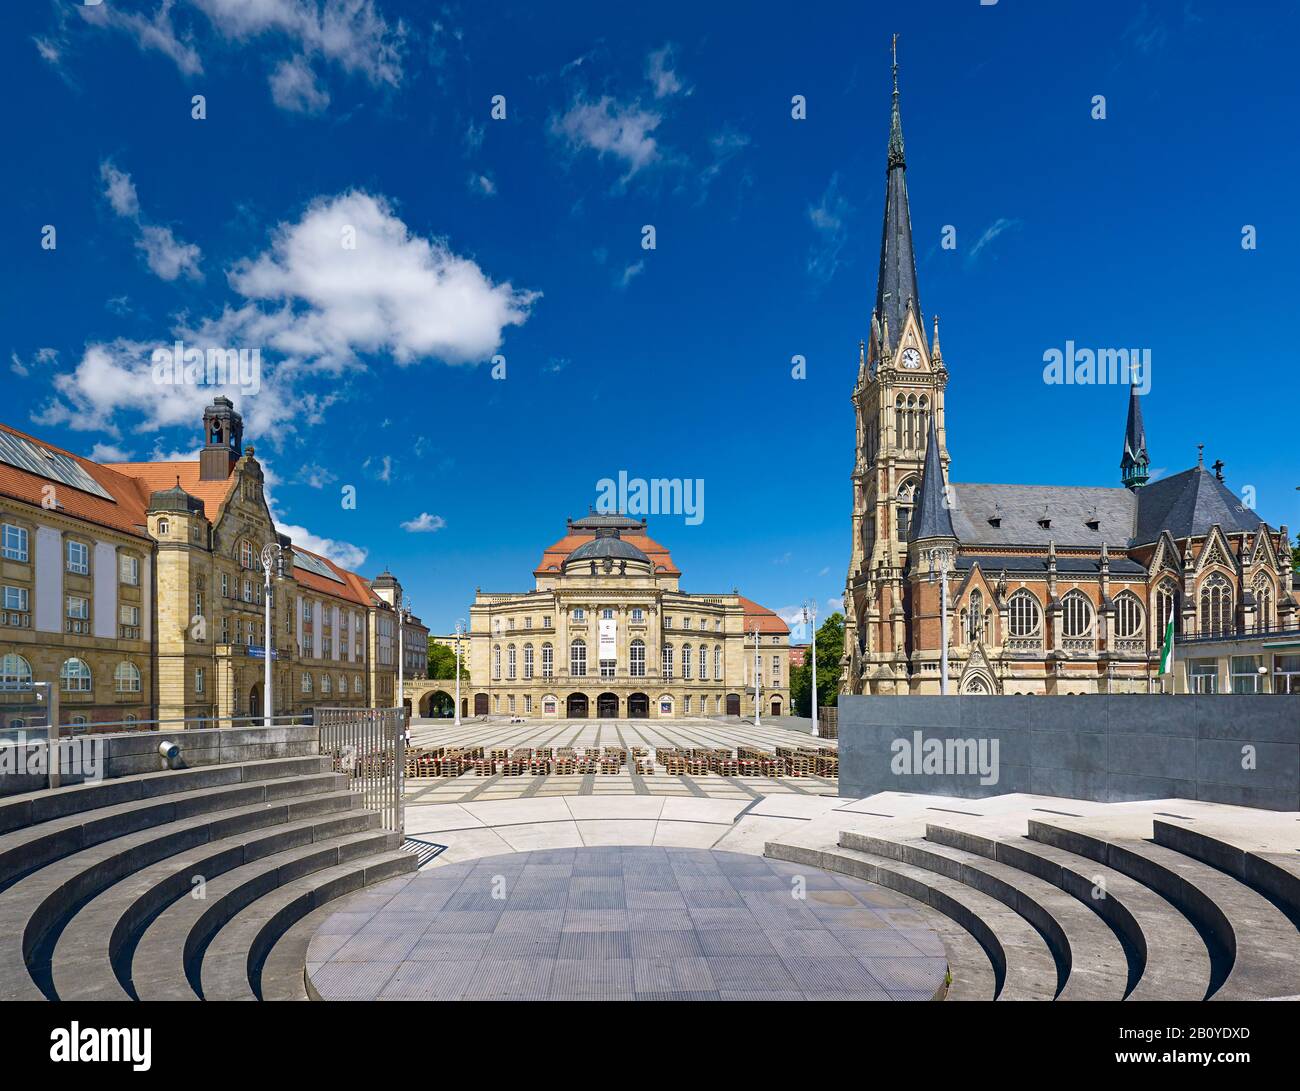 Theaterplatz con colección de arte, ópera e iglesia de San Petri en Chemnitz, Sajonia, Alemania, Foto de stock